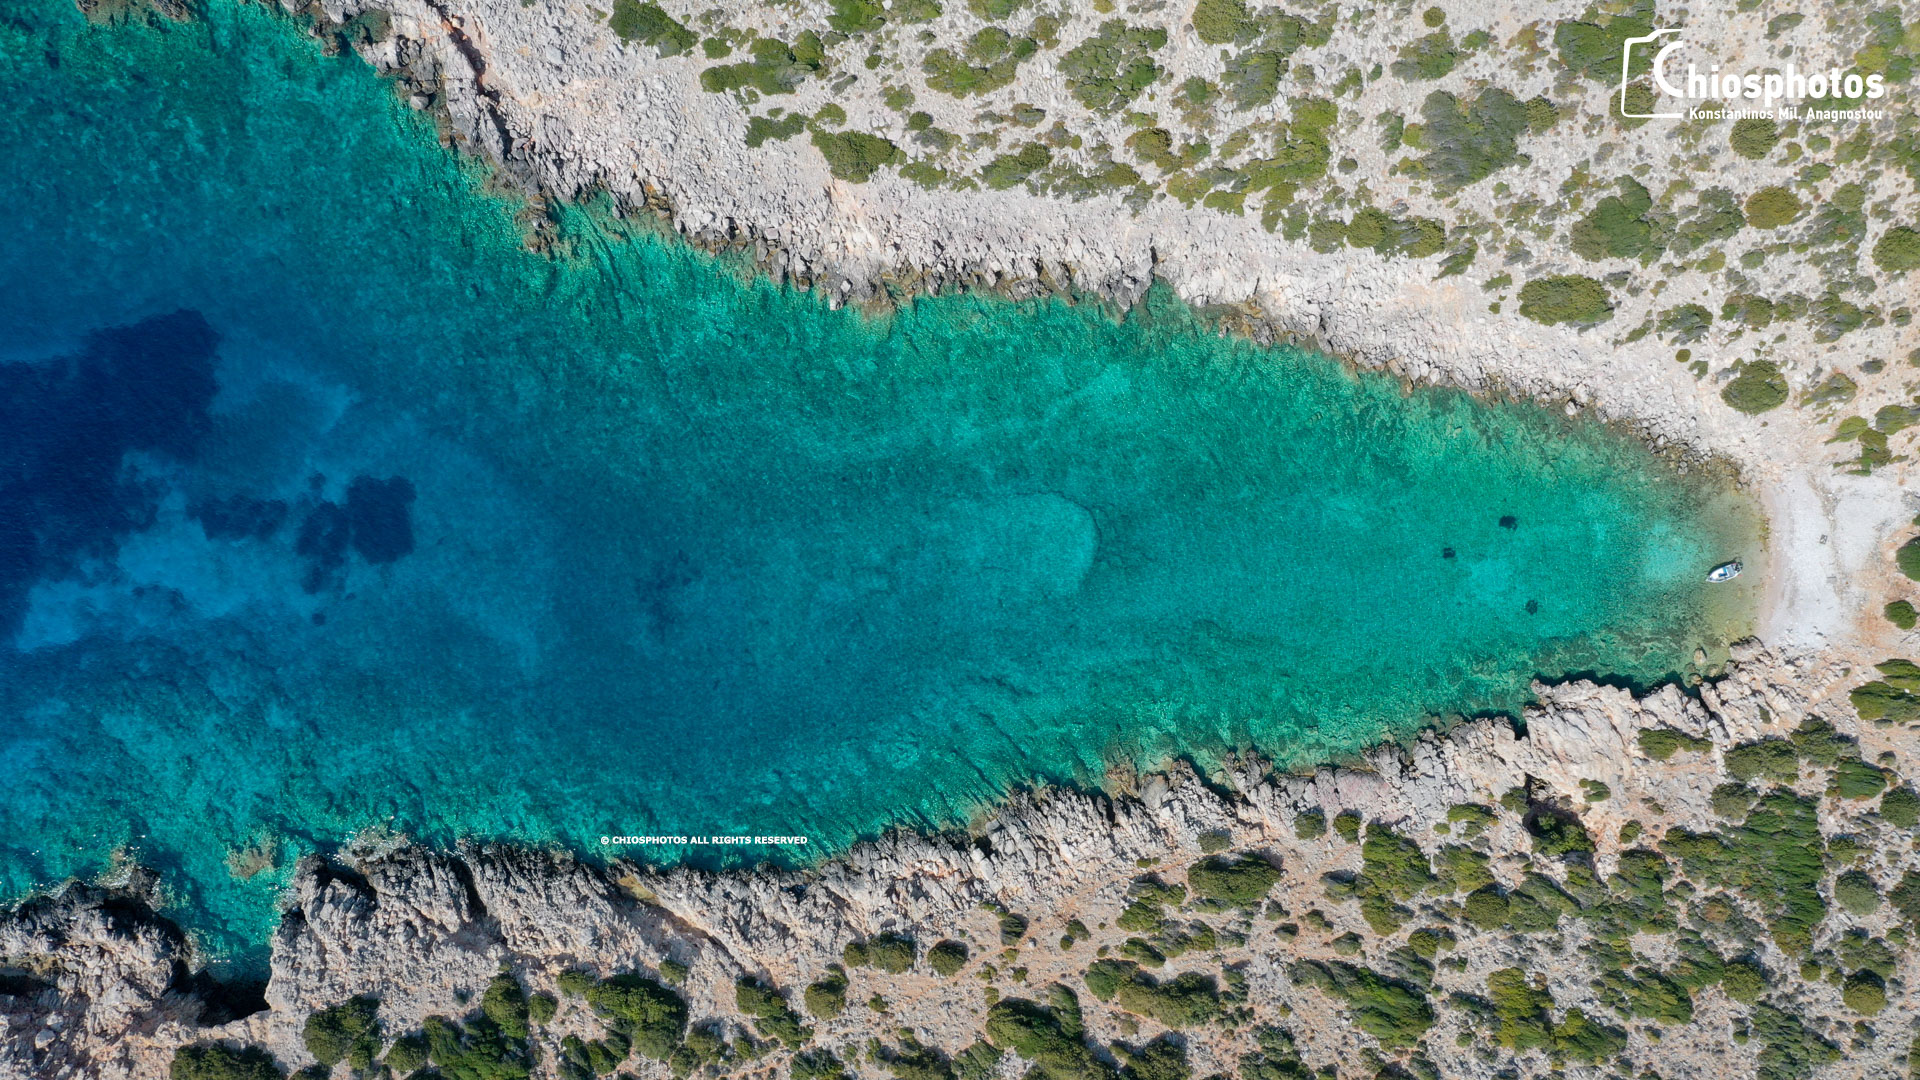 Στενογιάλι - Η άγνωστη παραλία της Νότιας Χίου με τα γαλαζοπράσινα νερά